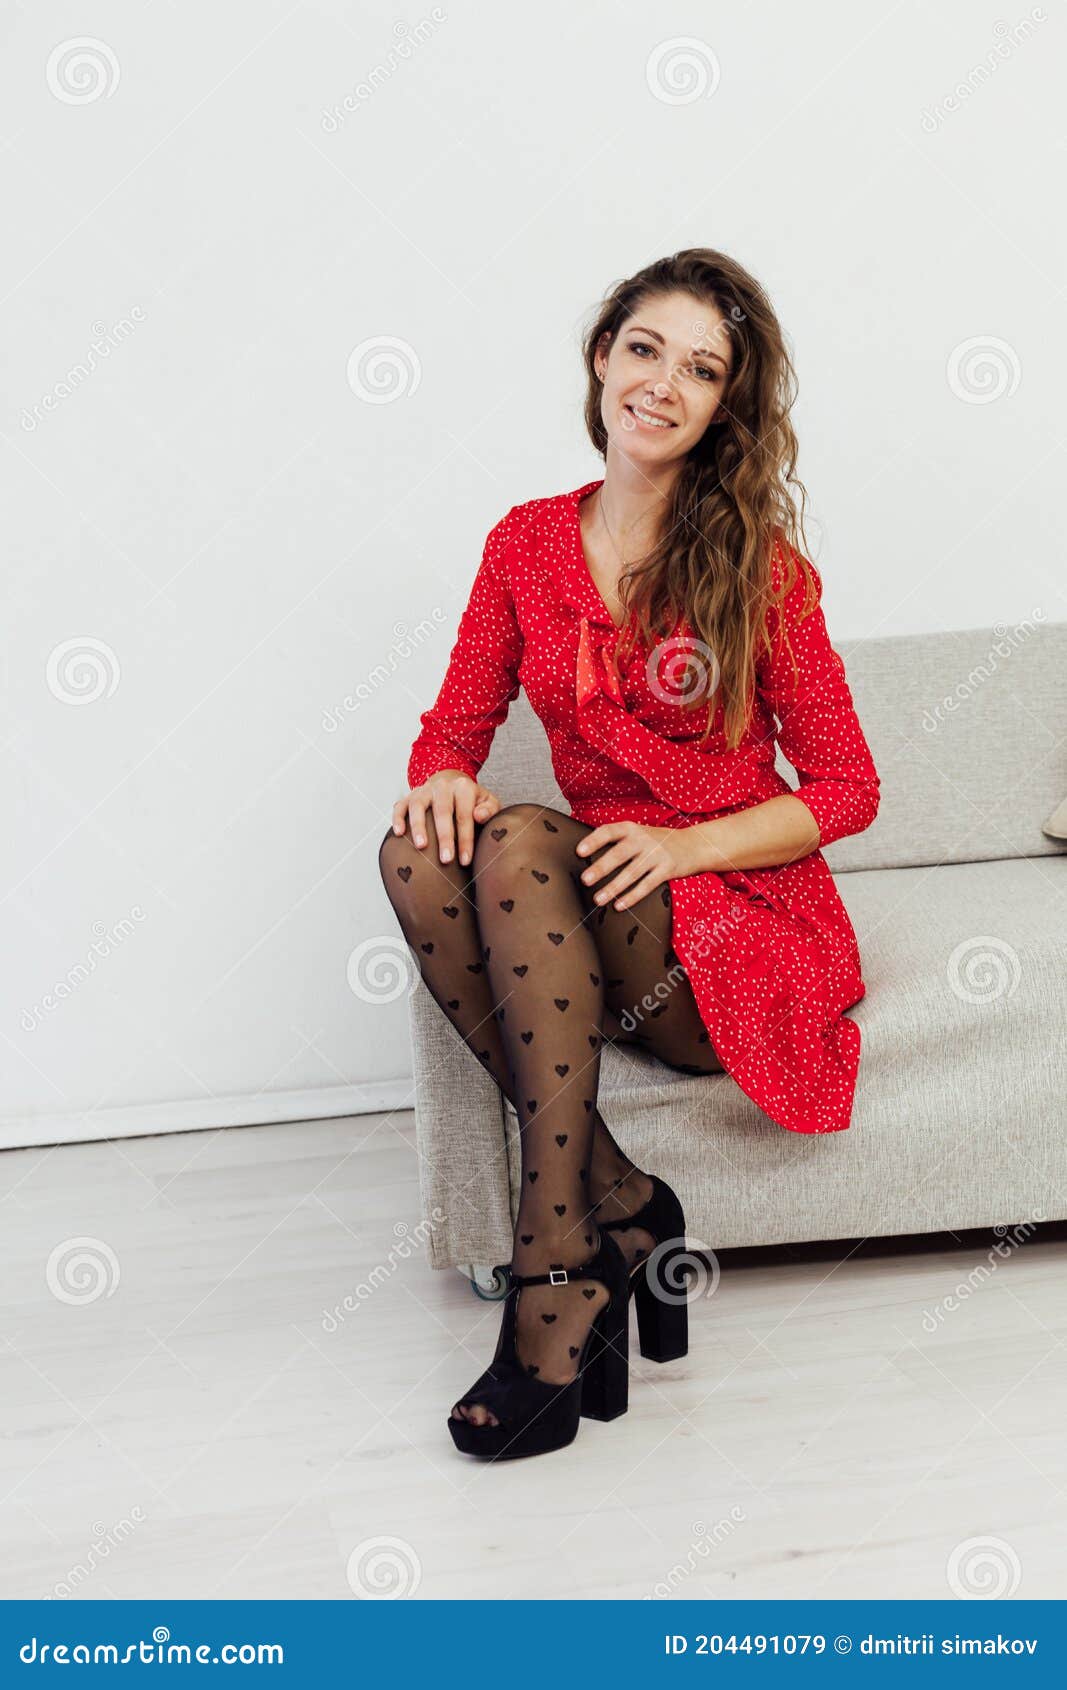 Hermosa Mujer De Moda En Un Vestido Rojo Y Medias Negras Imagen de archivo - Imagen atractivo, oscuro: 204491079